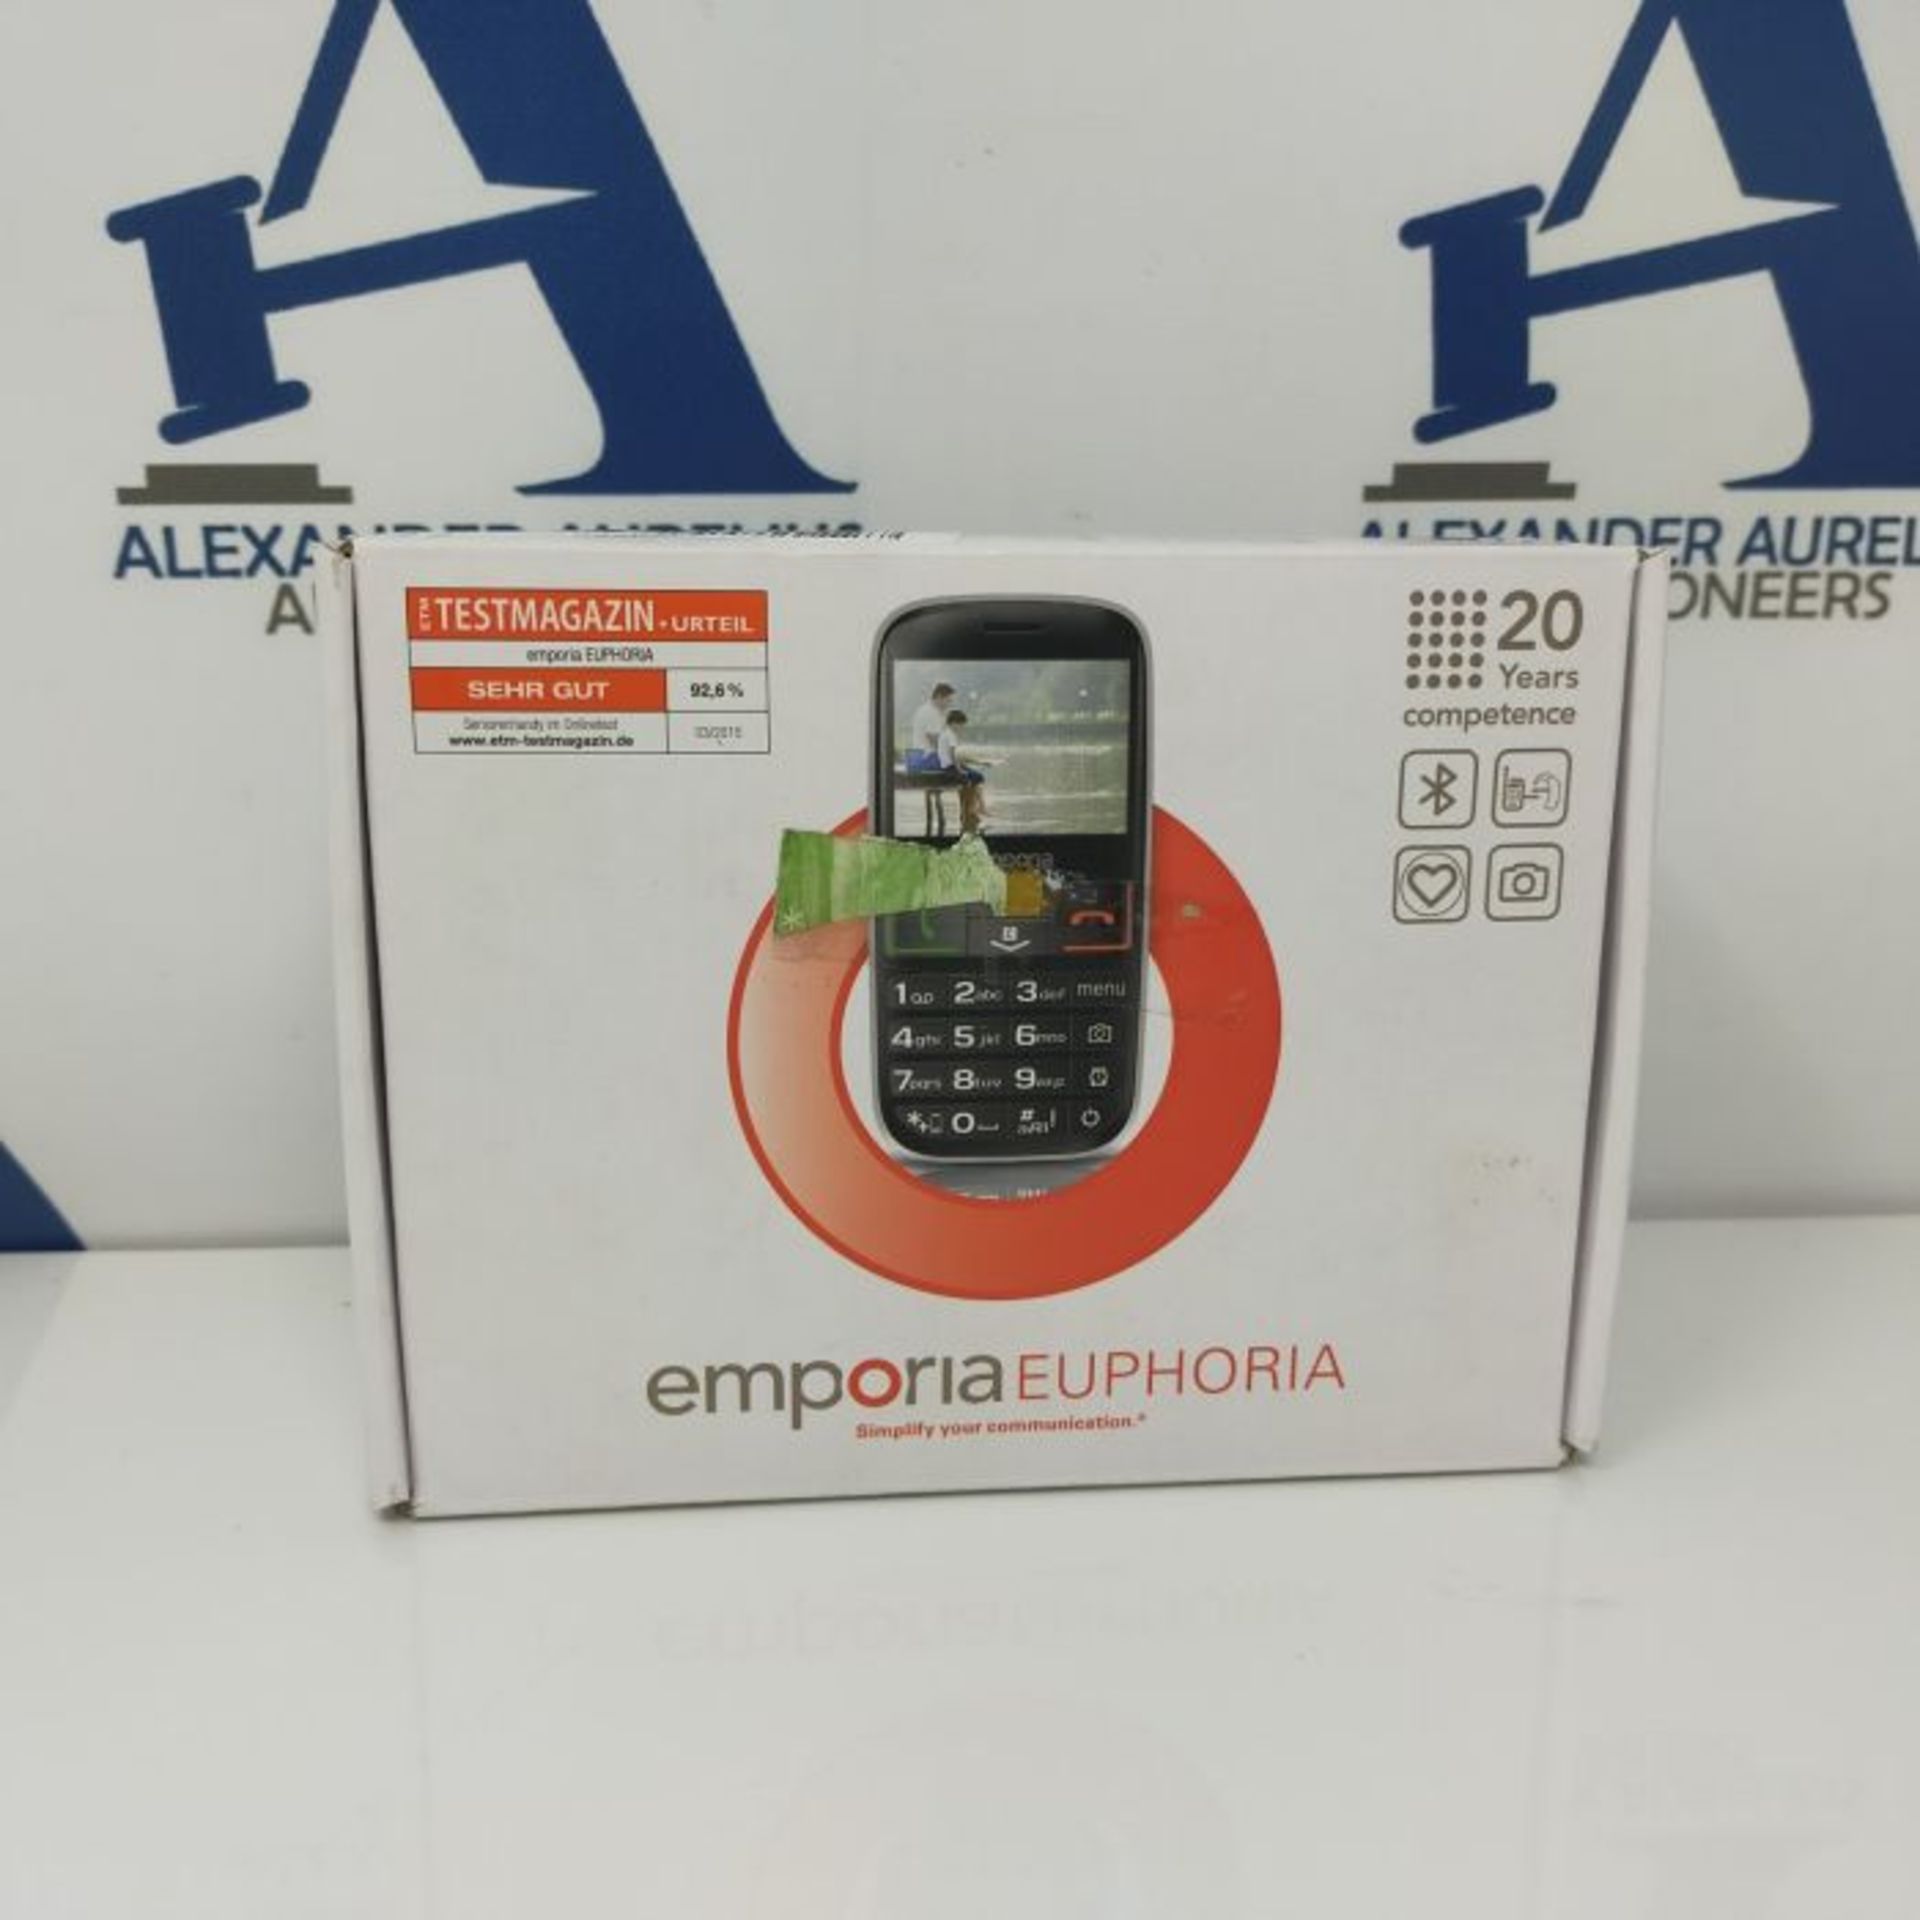 RRP £59.00 Emporia EUPHORIA 2.3" 90g Black, Silver - mobile phones (Single SIM, MiniSIM, Alarm cl - Image 3 of 3